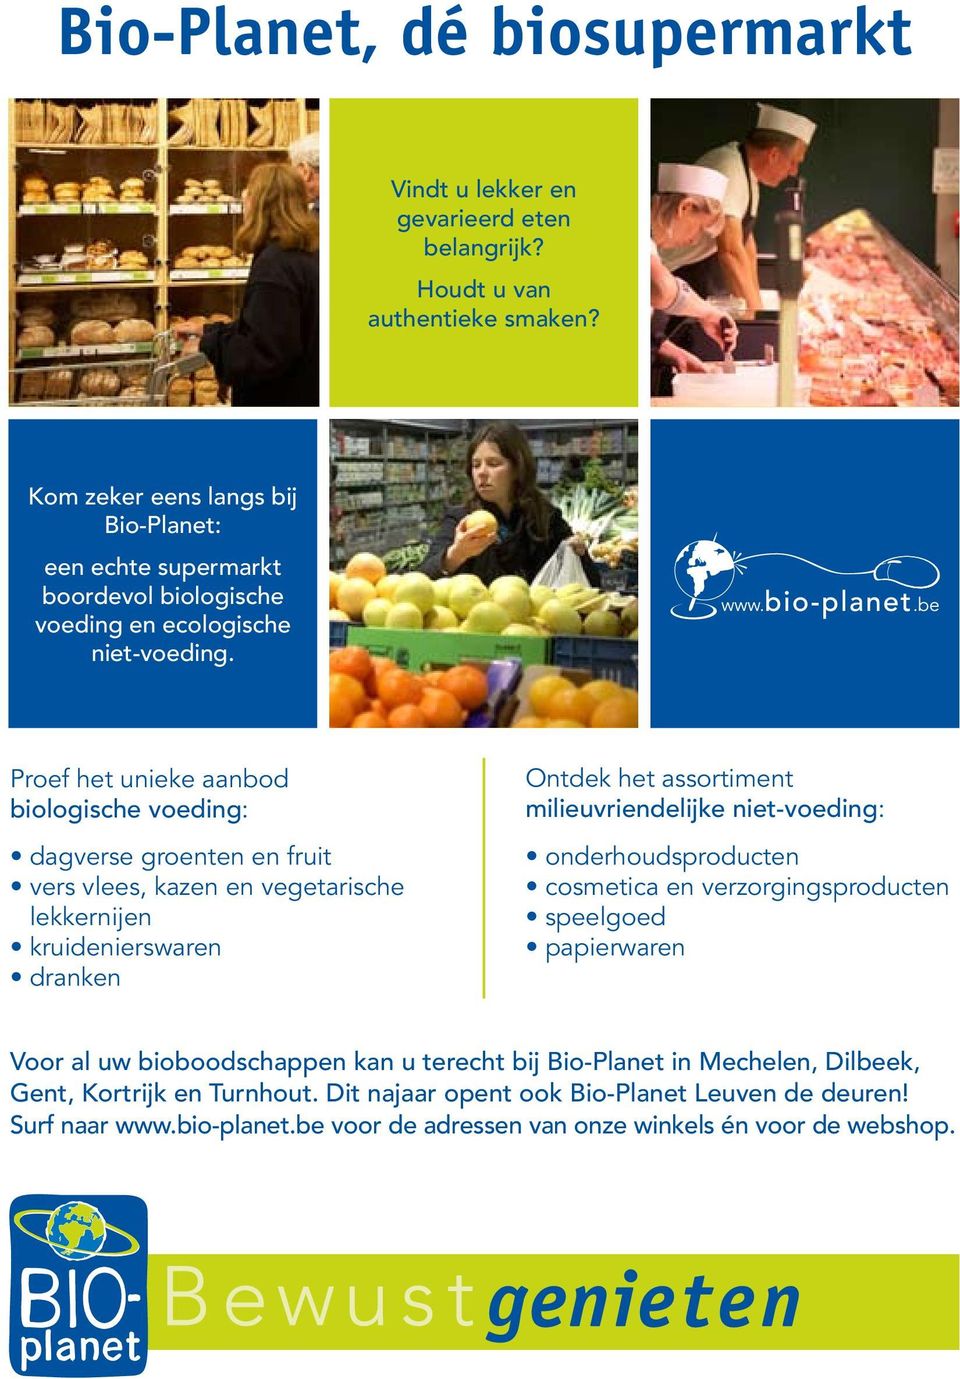 roef het unieke aanbod biologische voeding: milieuvriendelijke niet-voeding: Voor al uw bioboodschappen kan u terecht bij Bio-lanet in Mechelen,